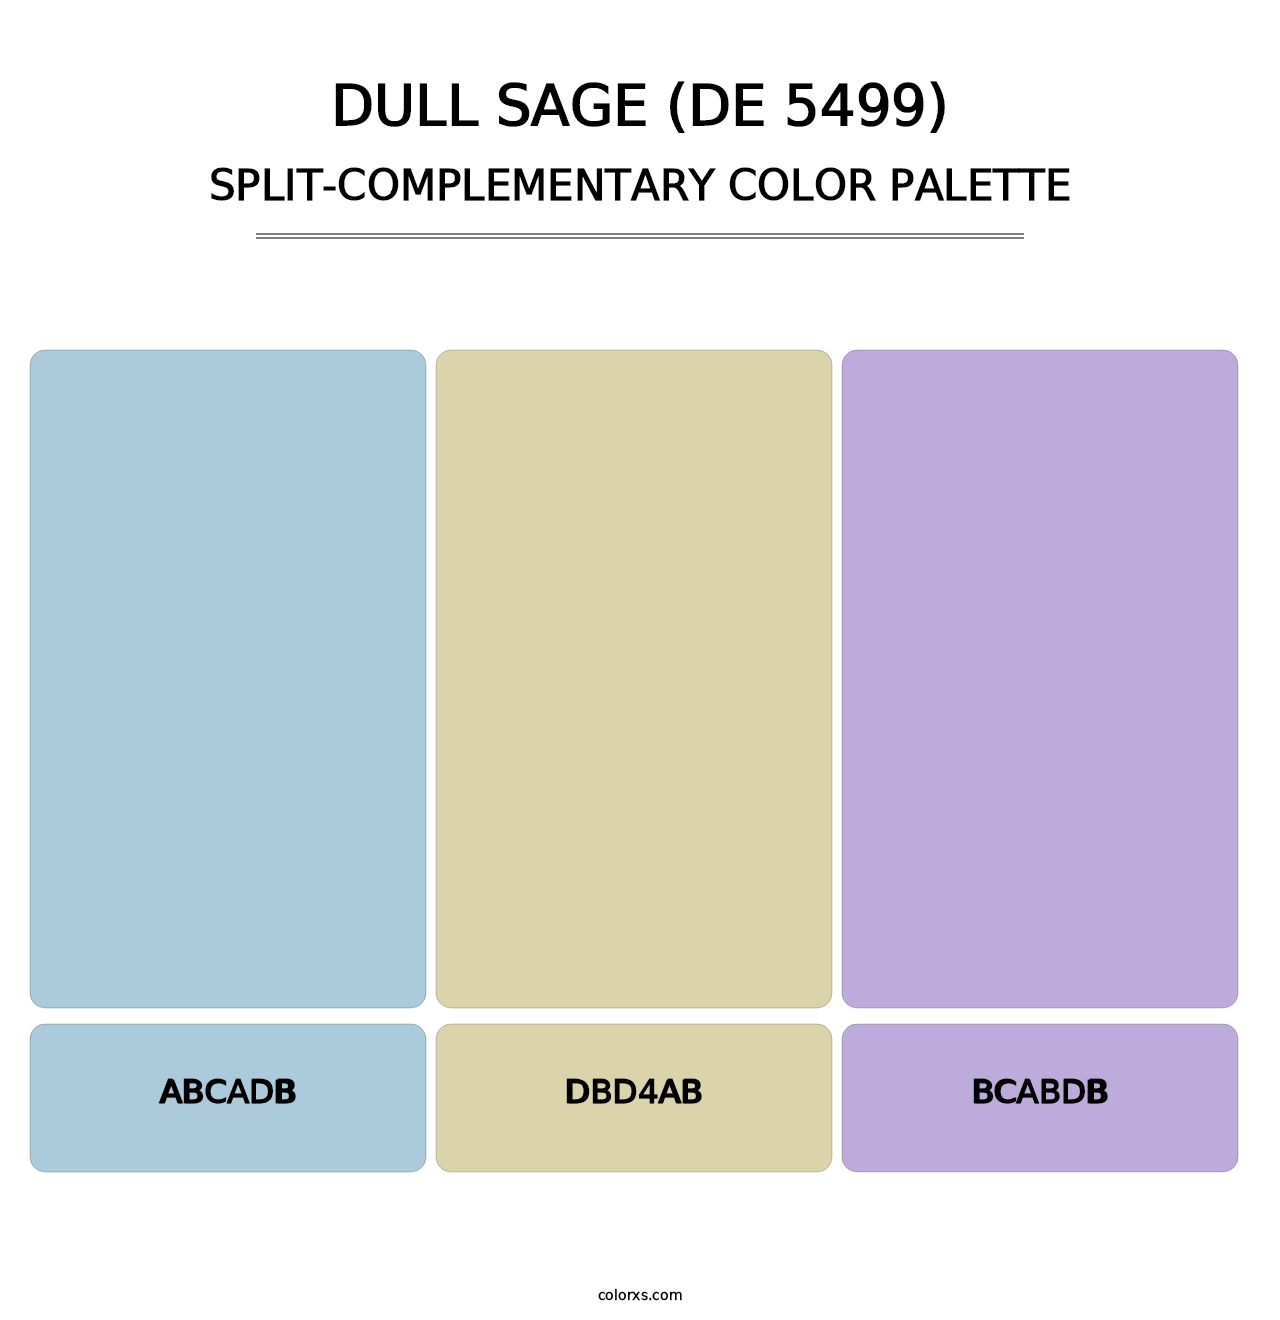 Dull Sage (DE 5499) - Split-Complementary Color Palette